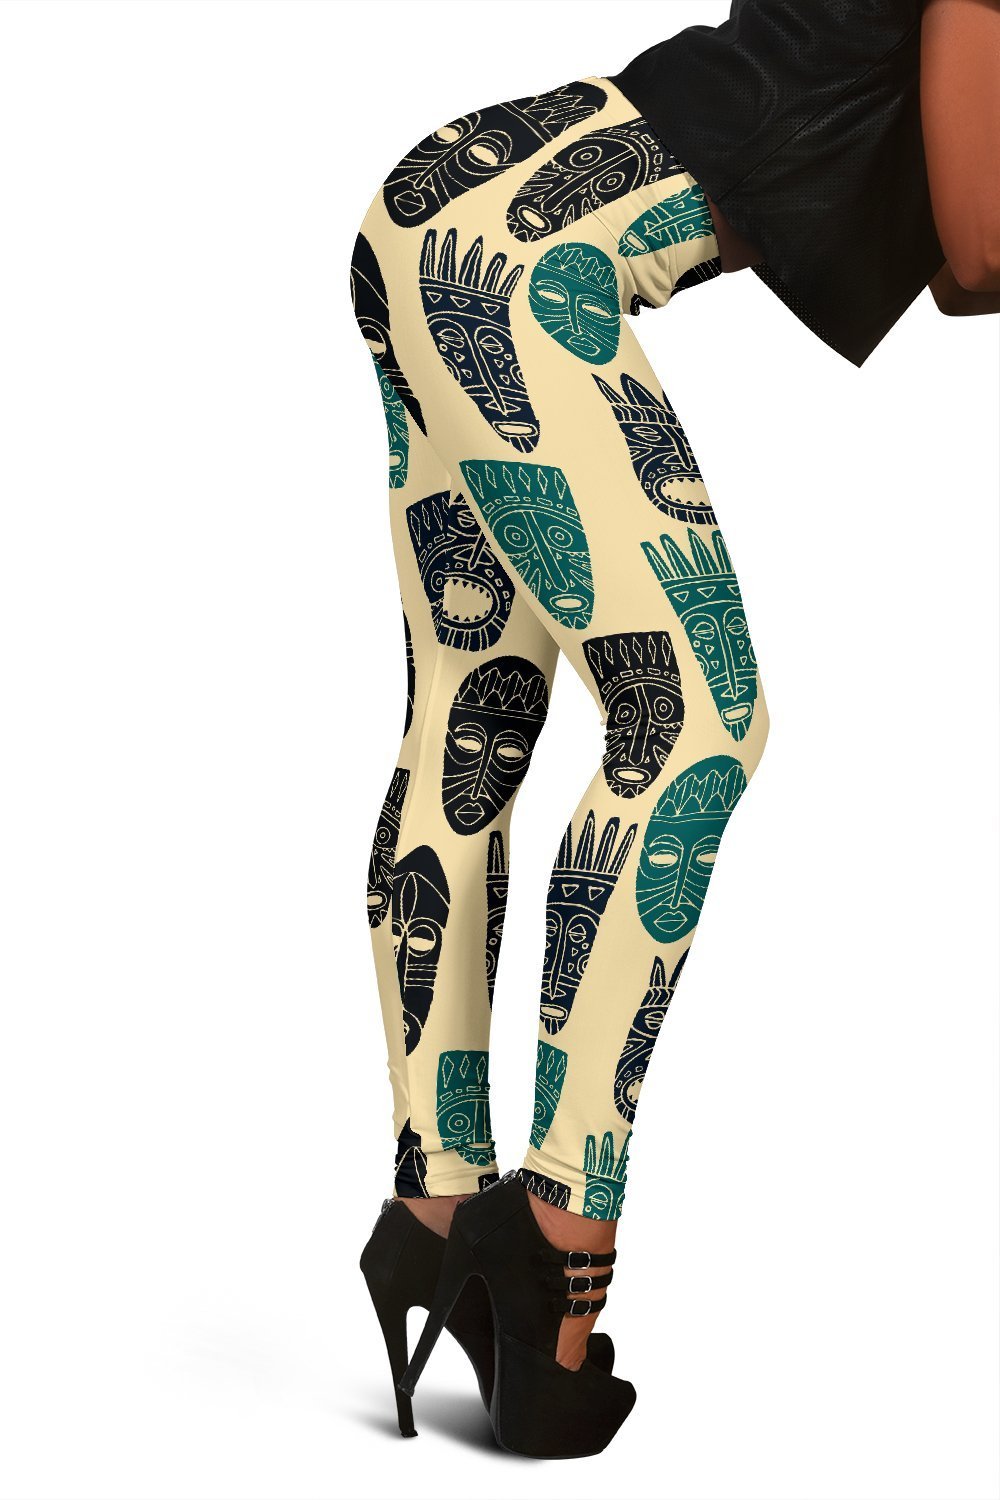 Totem Mask Print Pattern Women Leggings-grizzshop